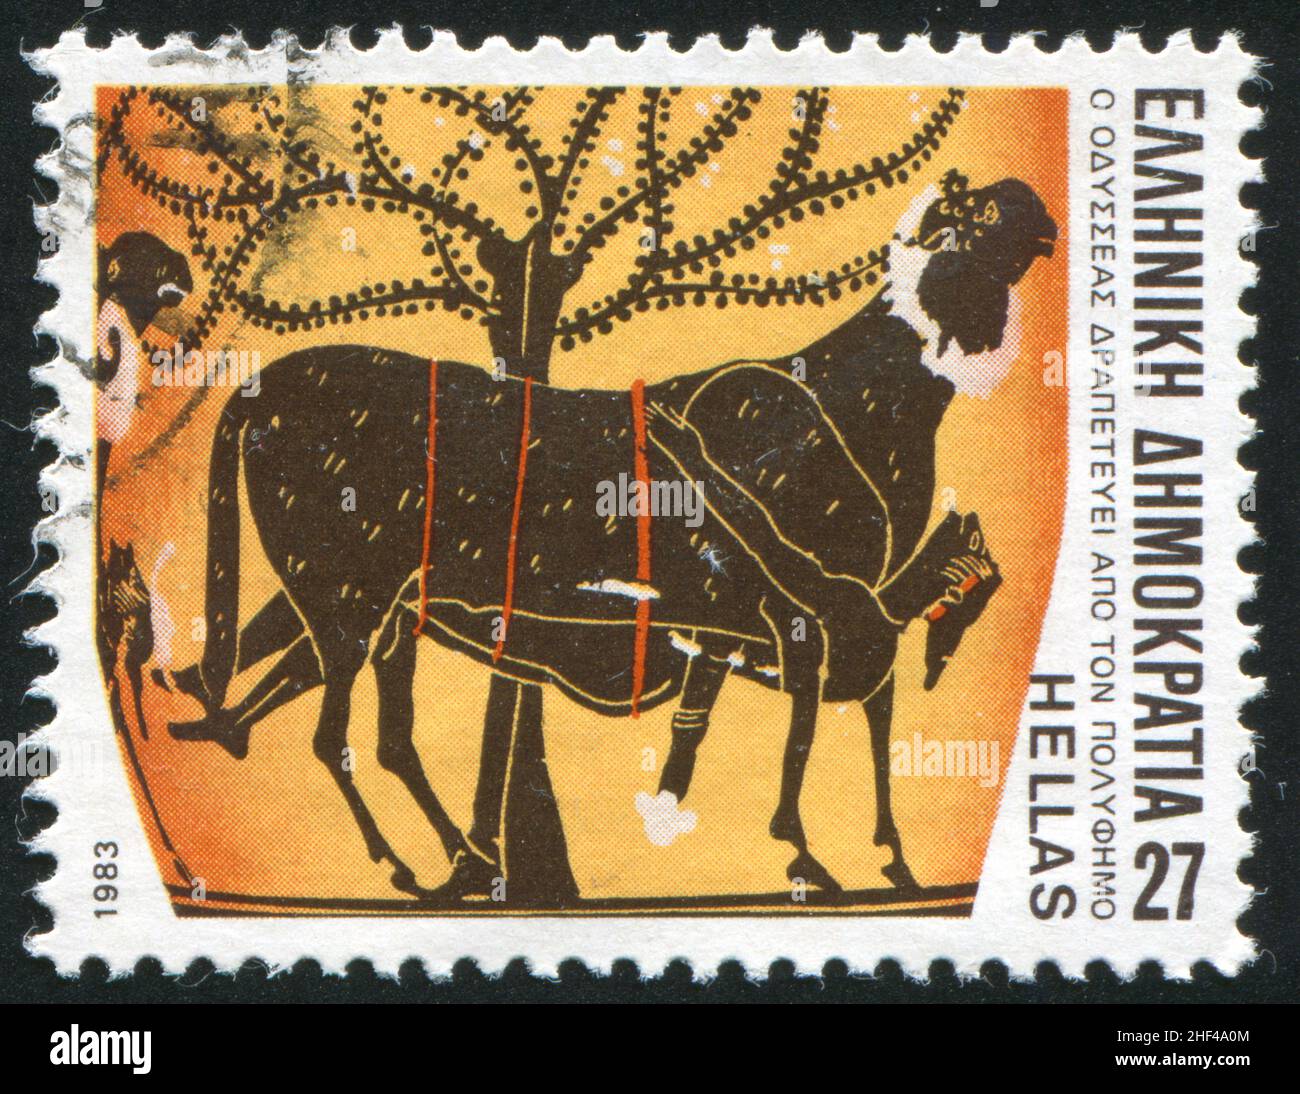 GRÈCE - VERS 1983: Timbre imprimé par la Grèce, montre Ulysses s'échapper de la grotte de Polyphemus, vers 1983 Banque D'Images